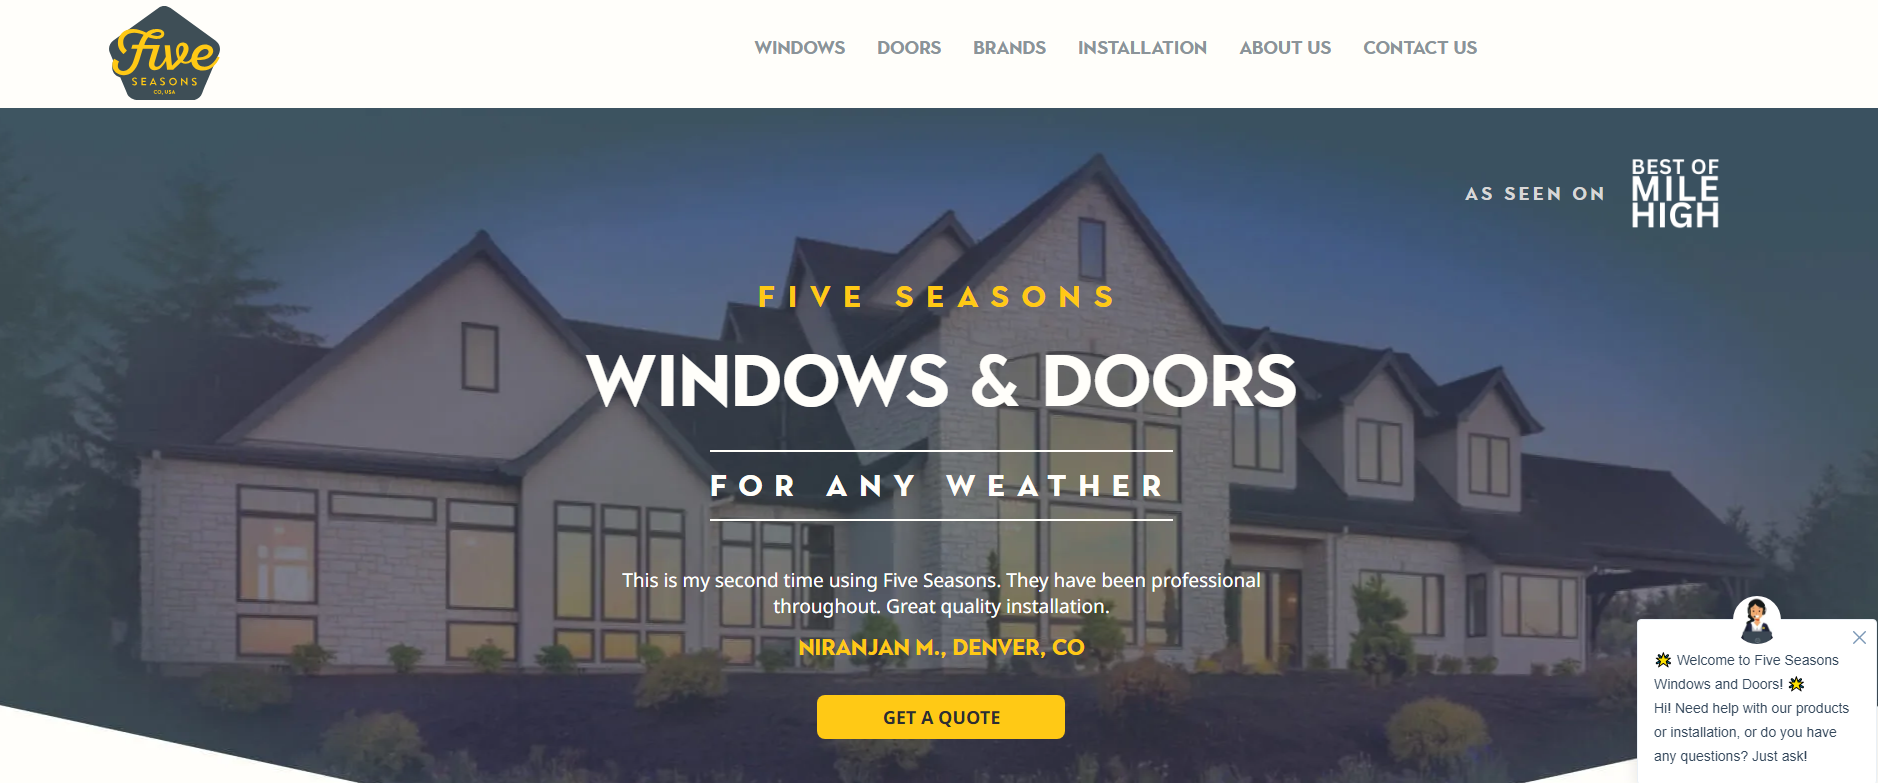 Five Seasons Windows & Doors